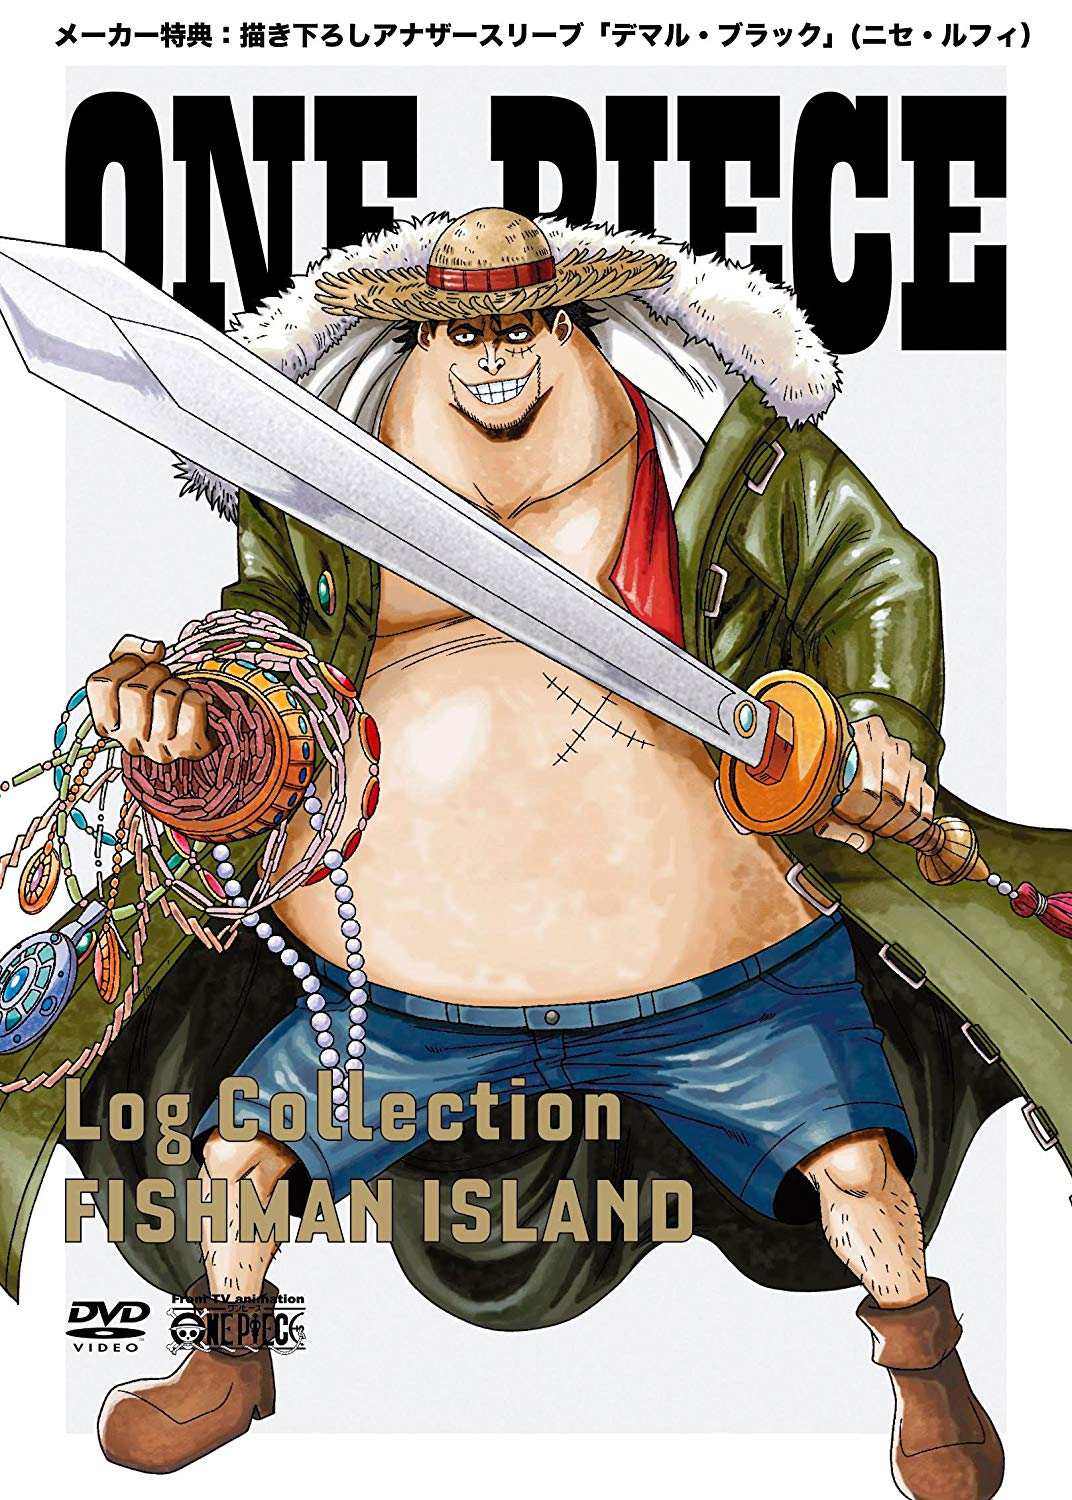 Seasons 13-14, One Piece Wiki